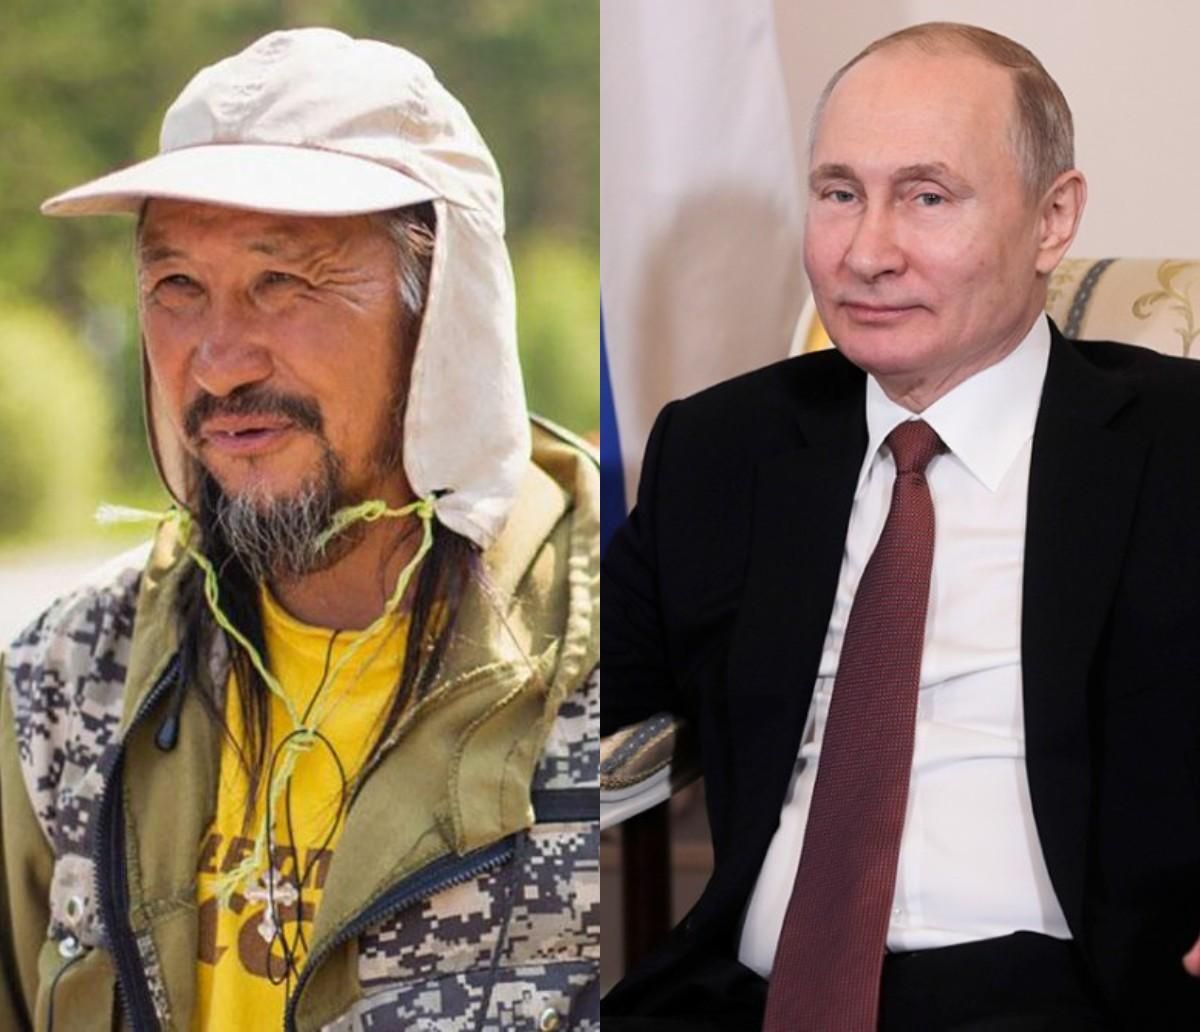 Сможет ли шаман одолеть суеверного узурпатора Путина  - 18 січня 2020 - 24 Канал